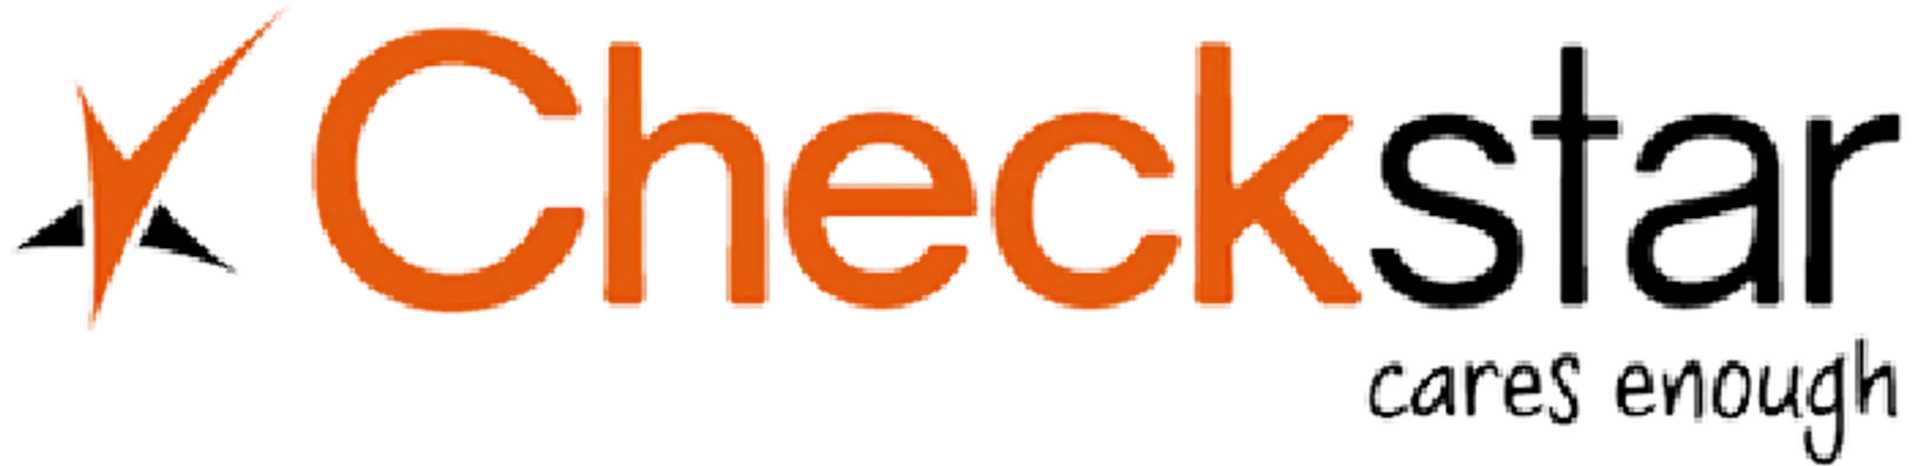 CHECKSTAR logo